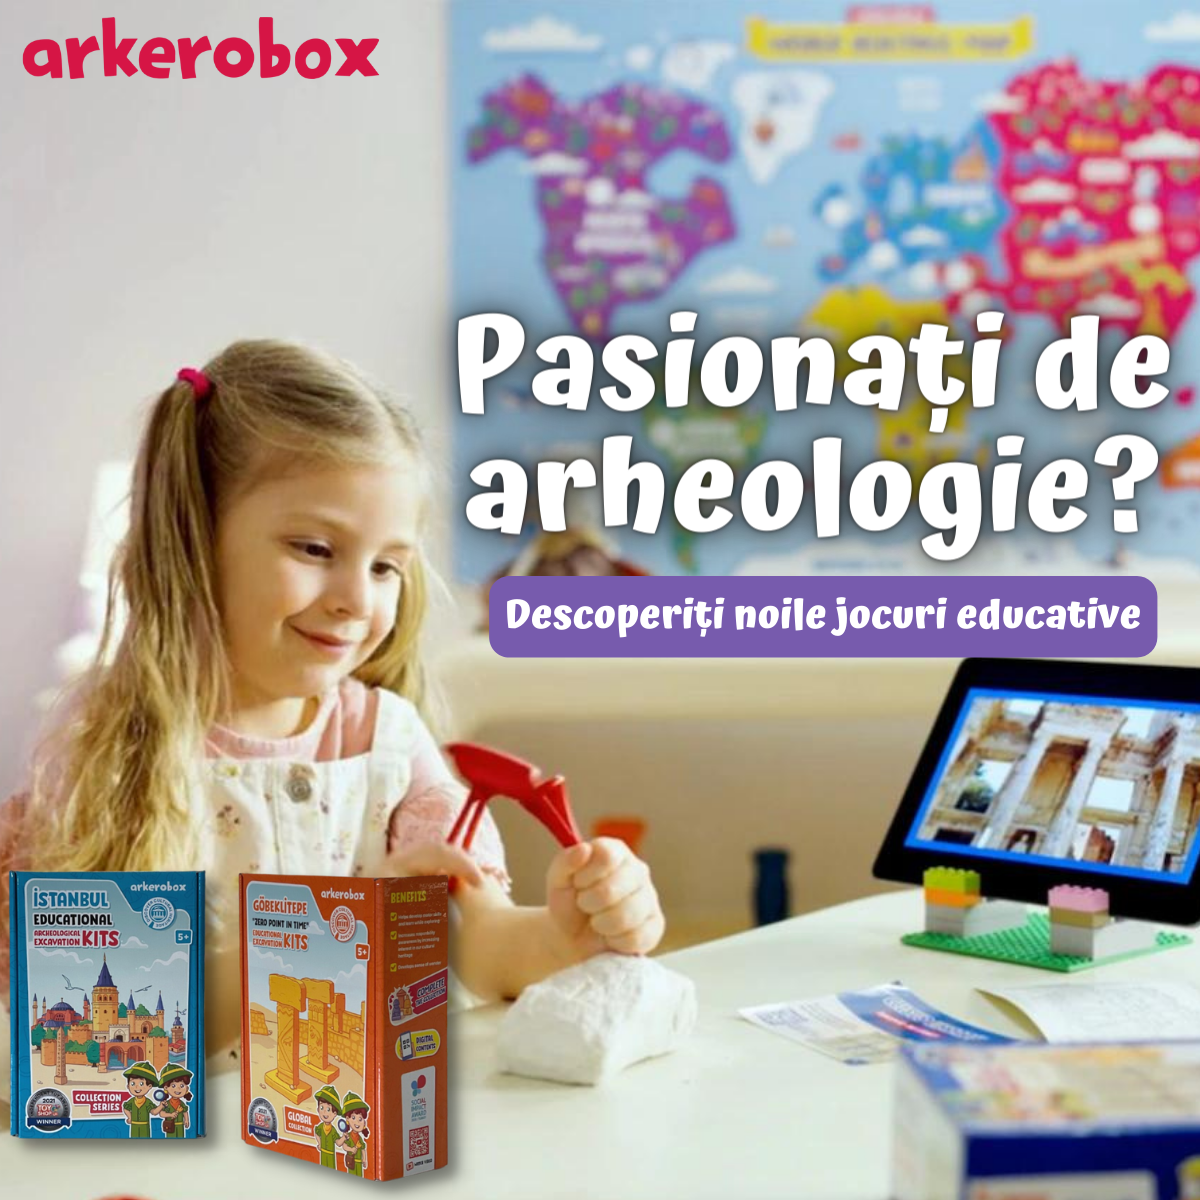 Arkerobox - Jocuri educaționale arheologice și puzzle 3D